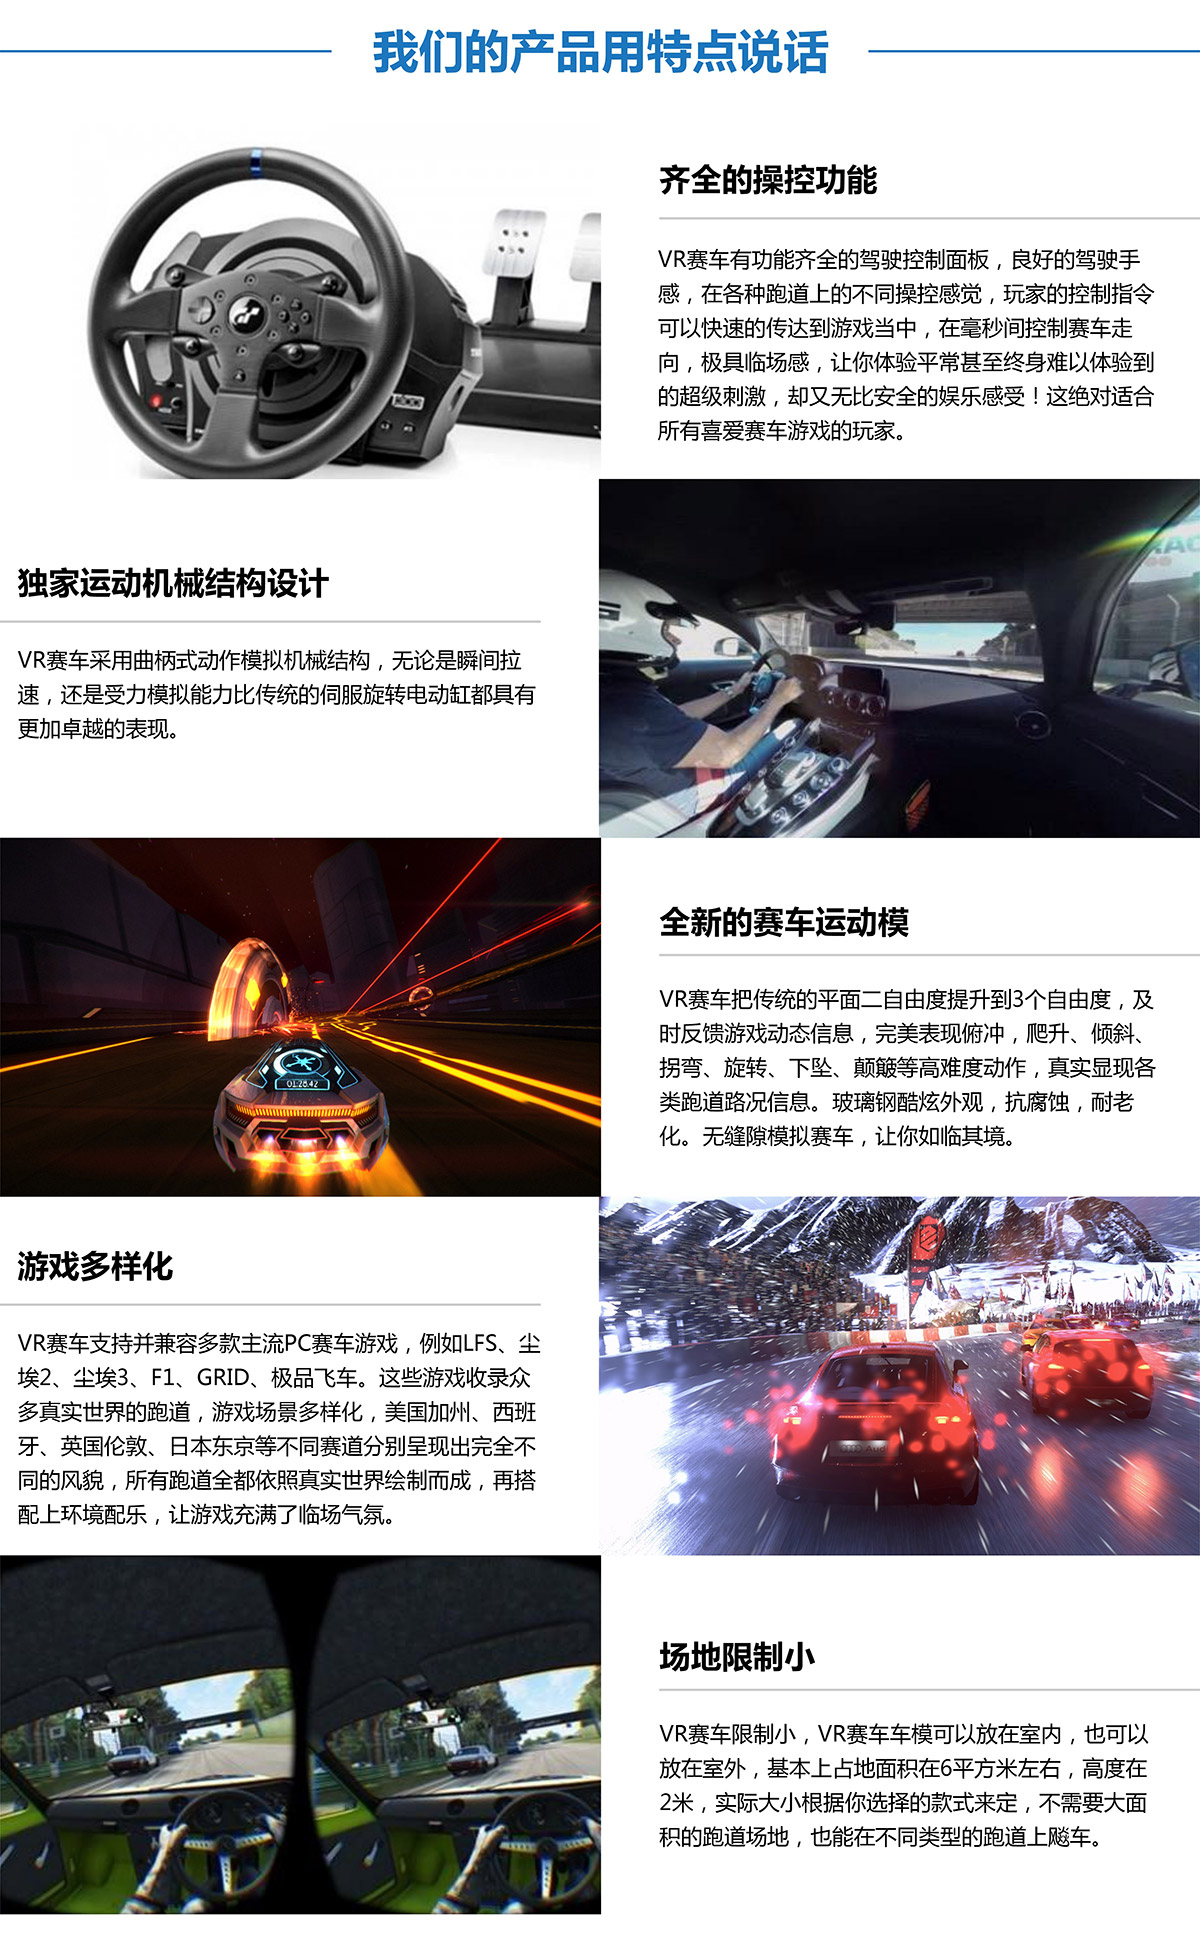 消防逃生虛擬VR賽車產品用特點說話.jpg